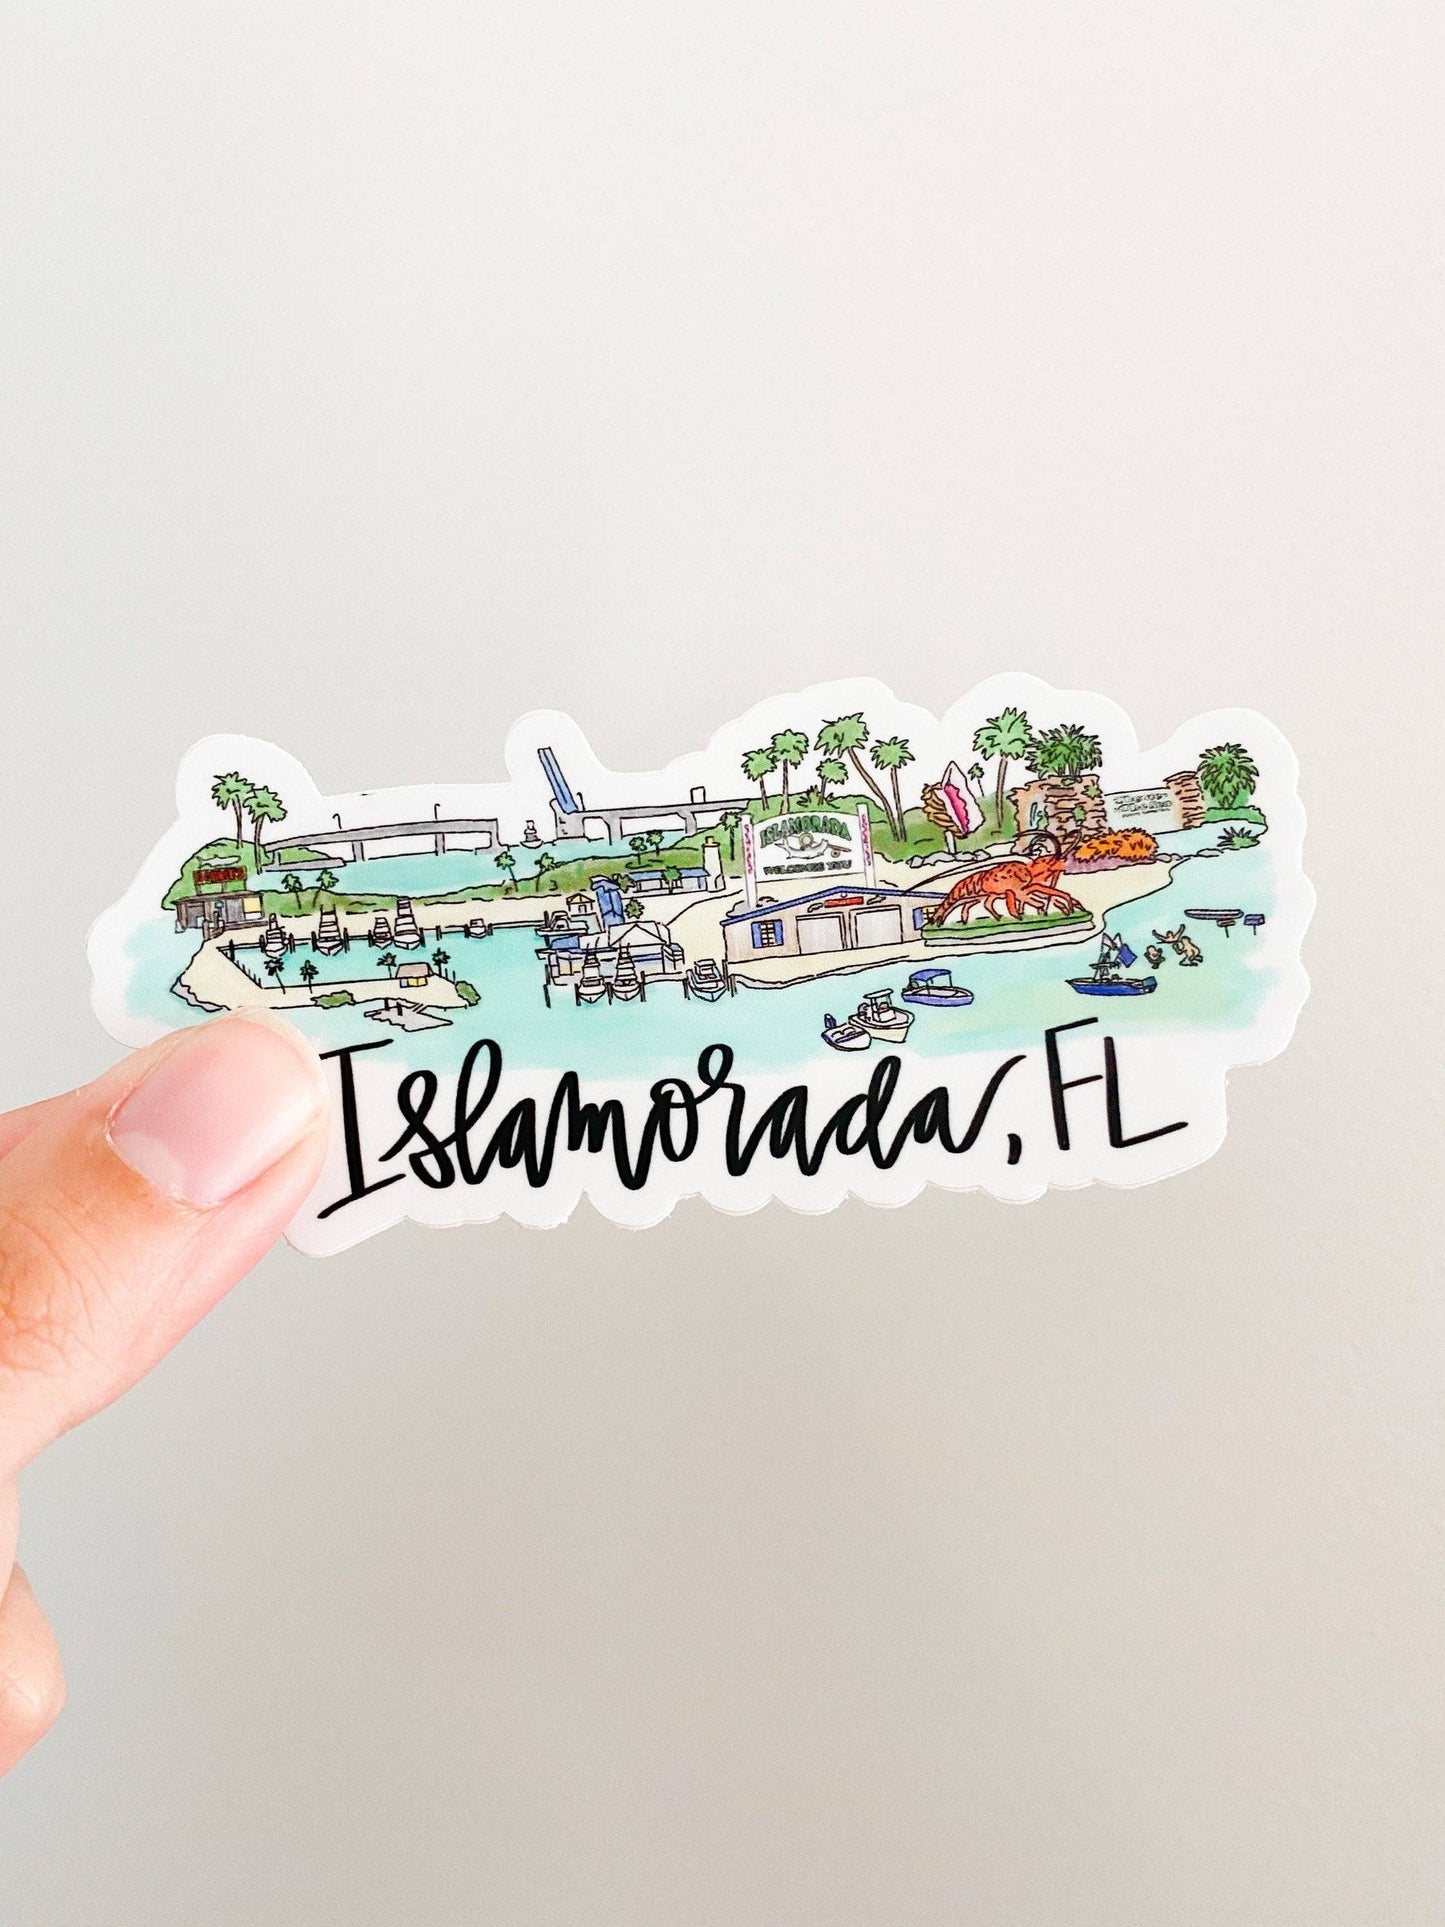 Islamorada, FL Skyline sticker - Large 5inx2in